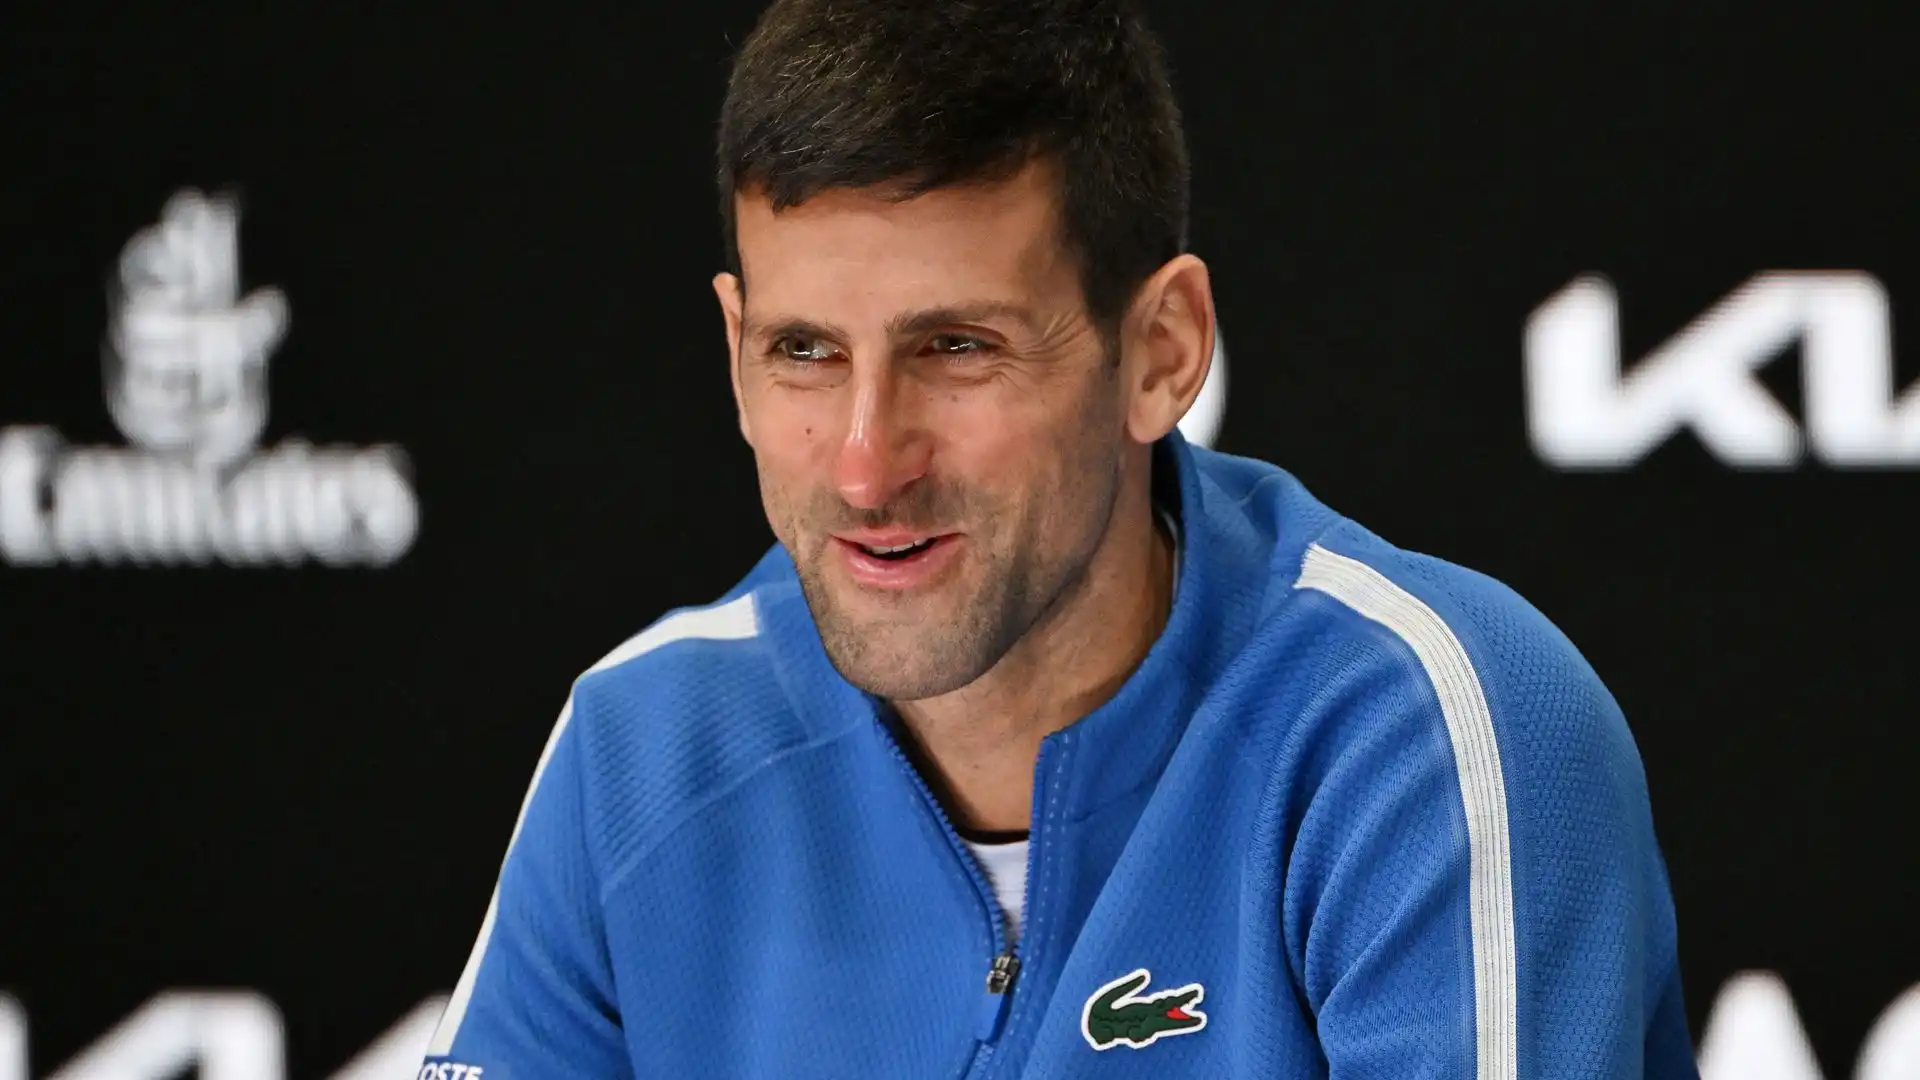 Pur senza giocare Novak Djokovic festeggia un altro record